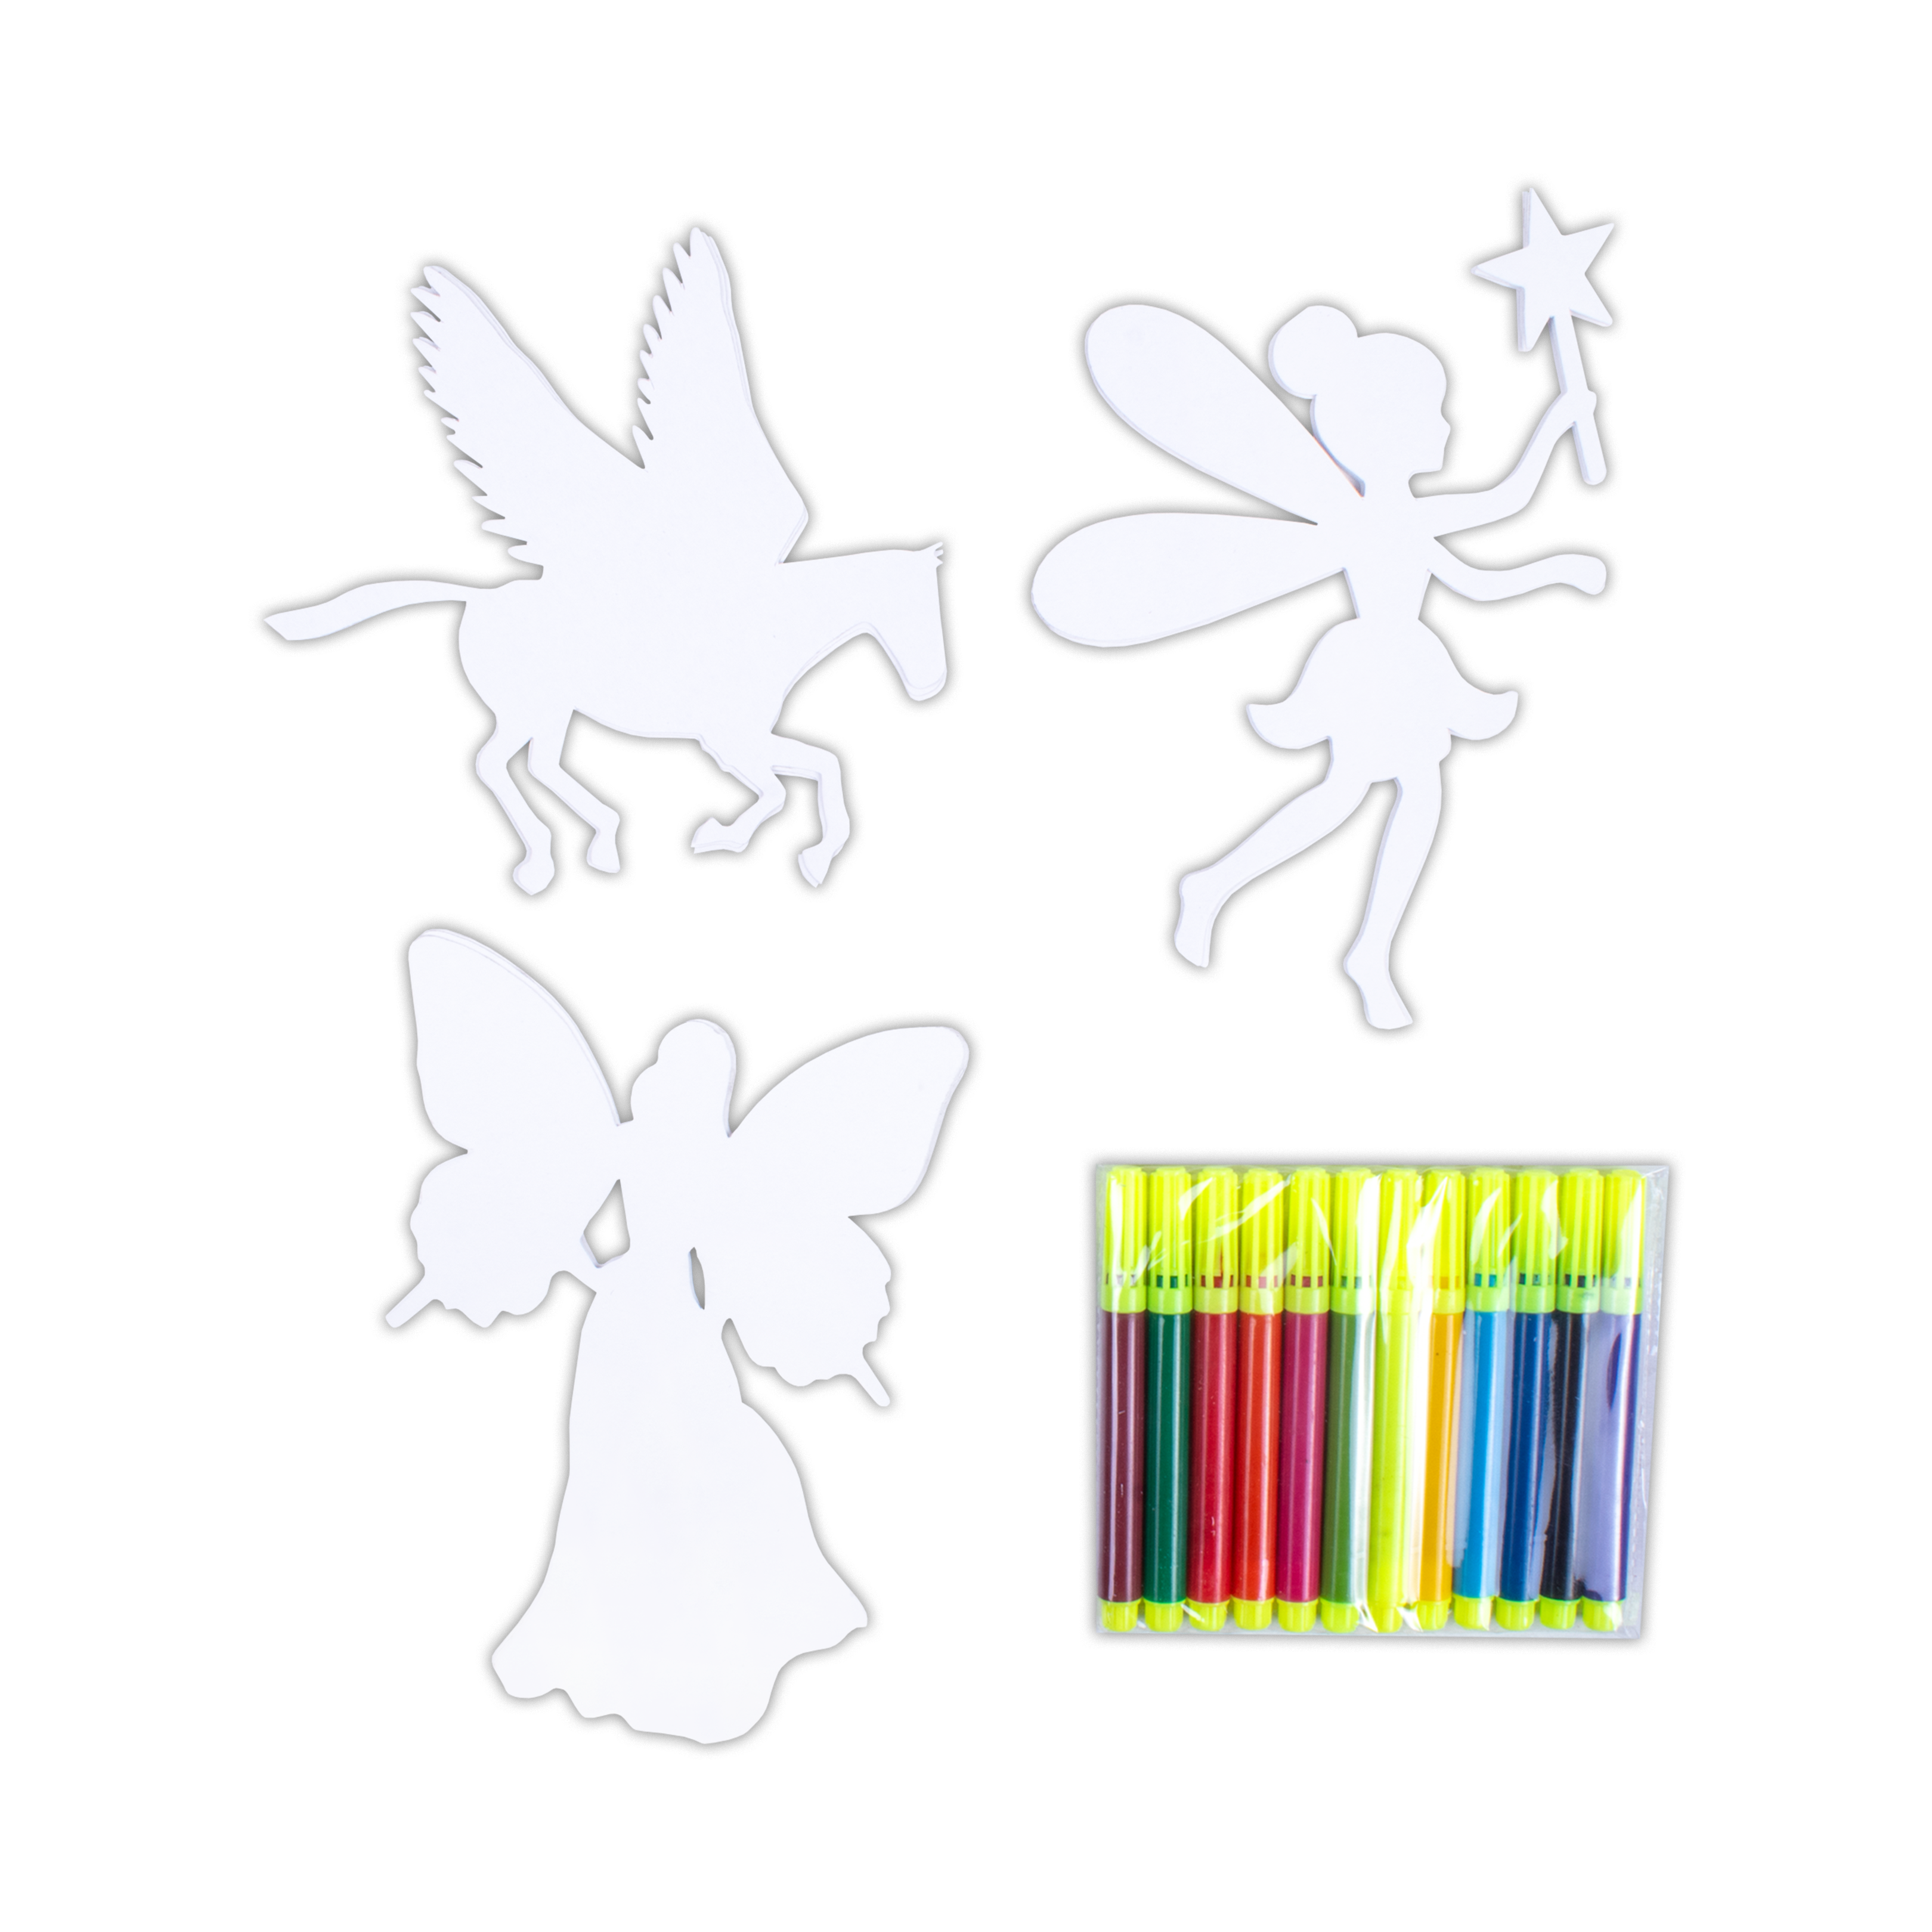 Colour Me Fairy Land Pre- Cut Shapes with 12 Colour Markers 10Pc Box